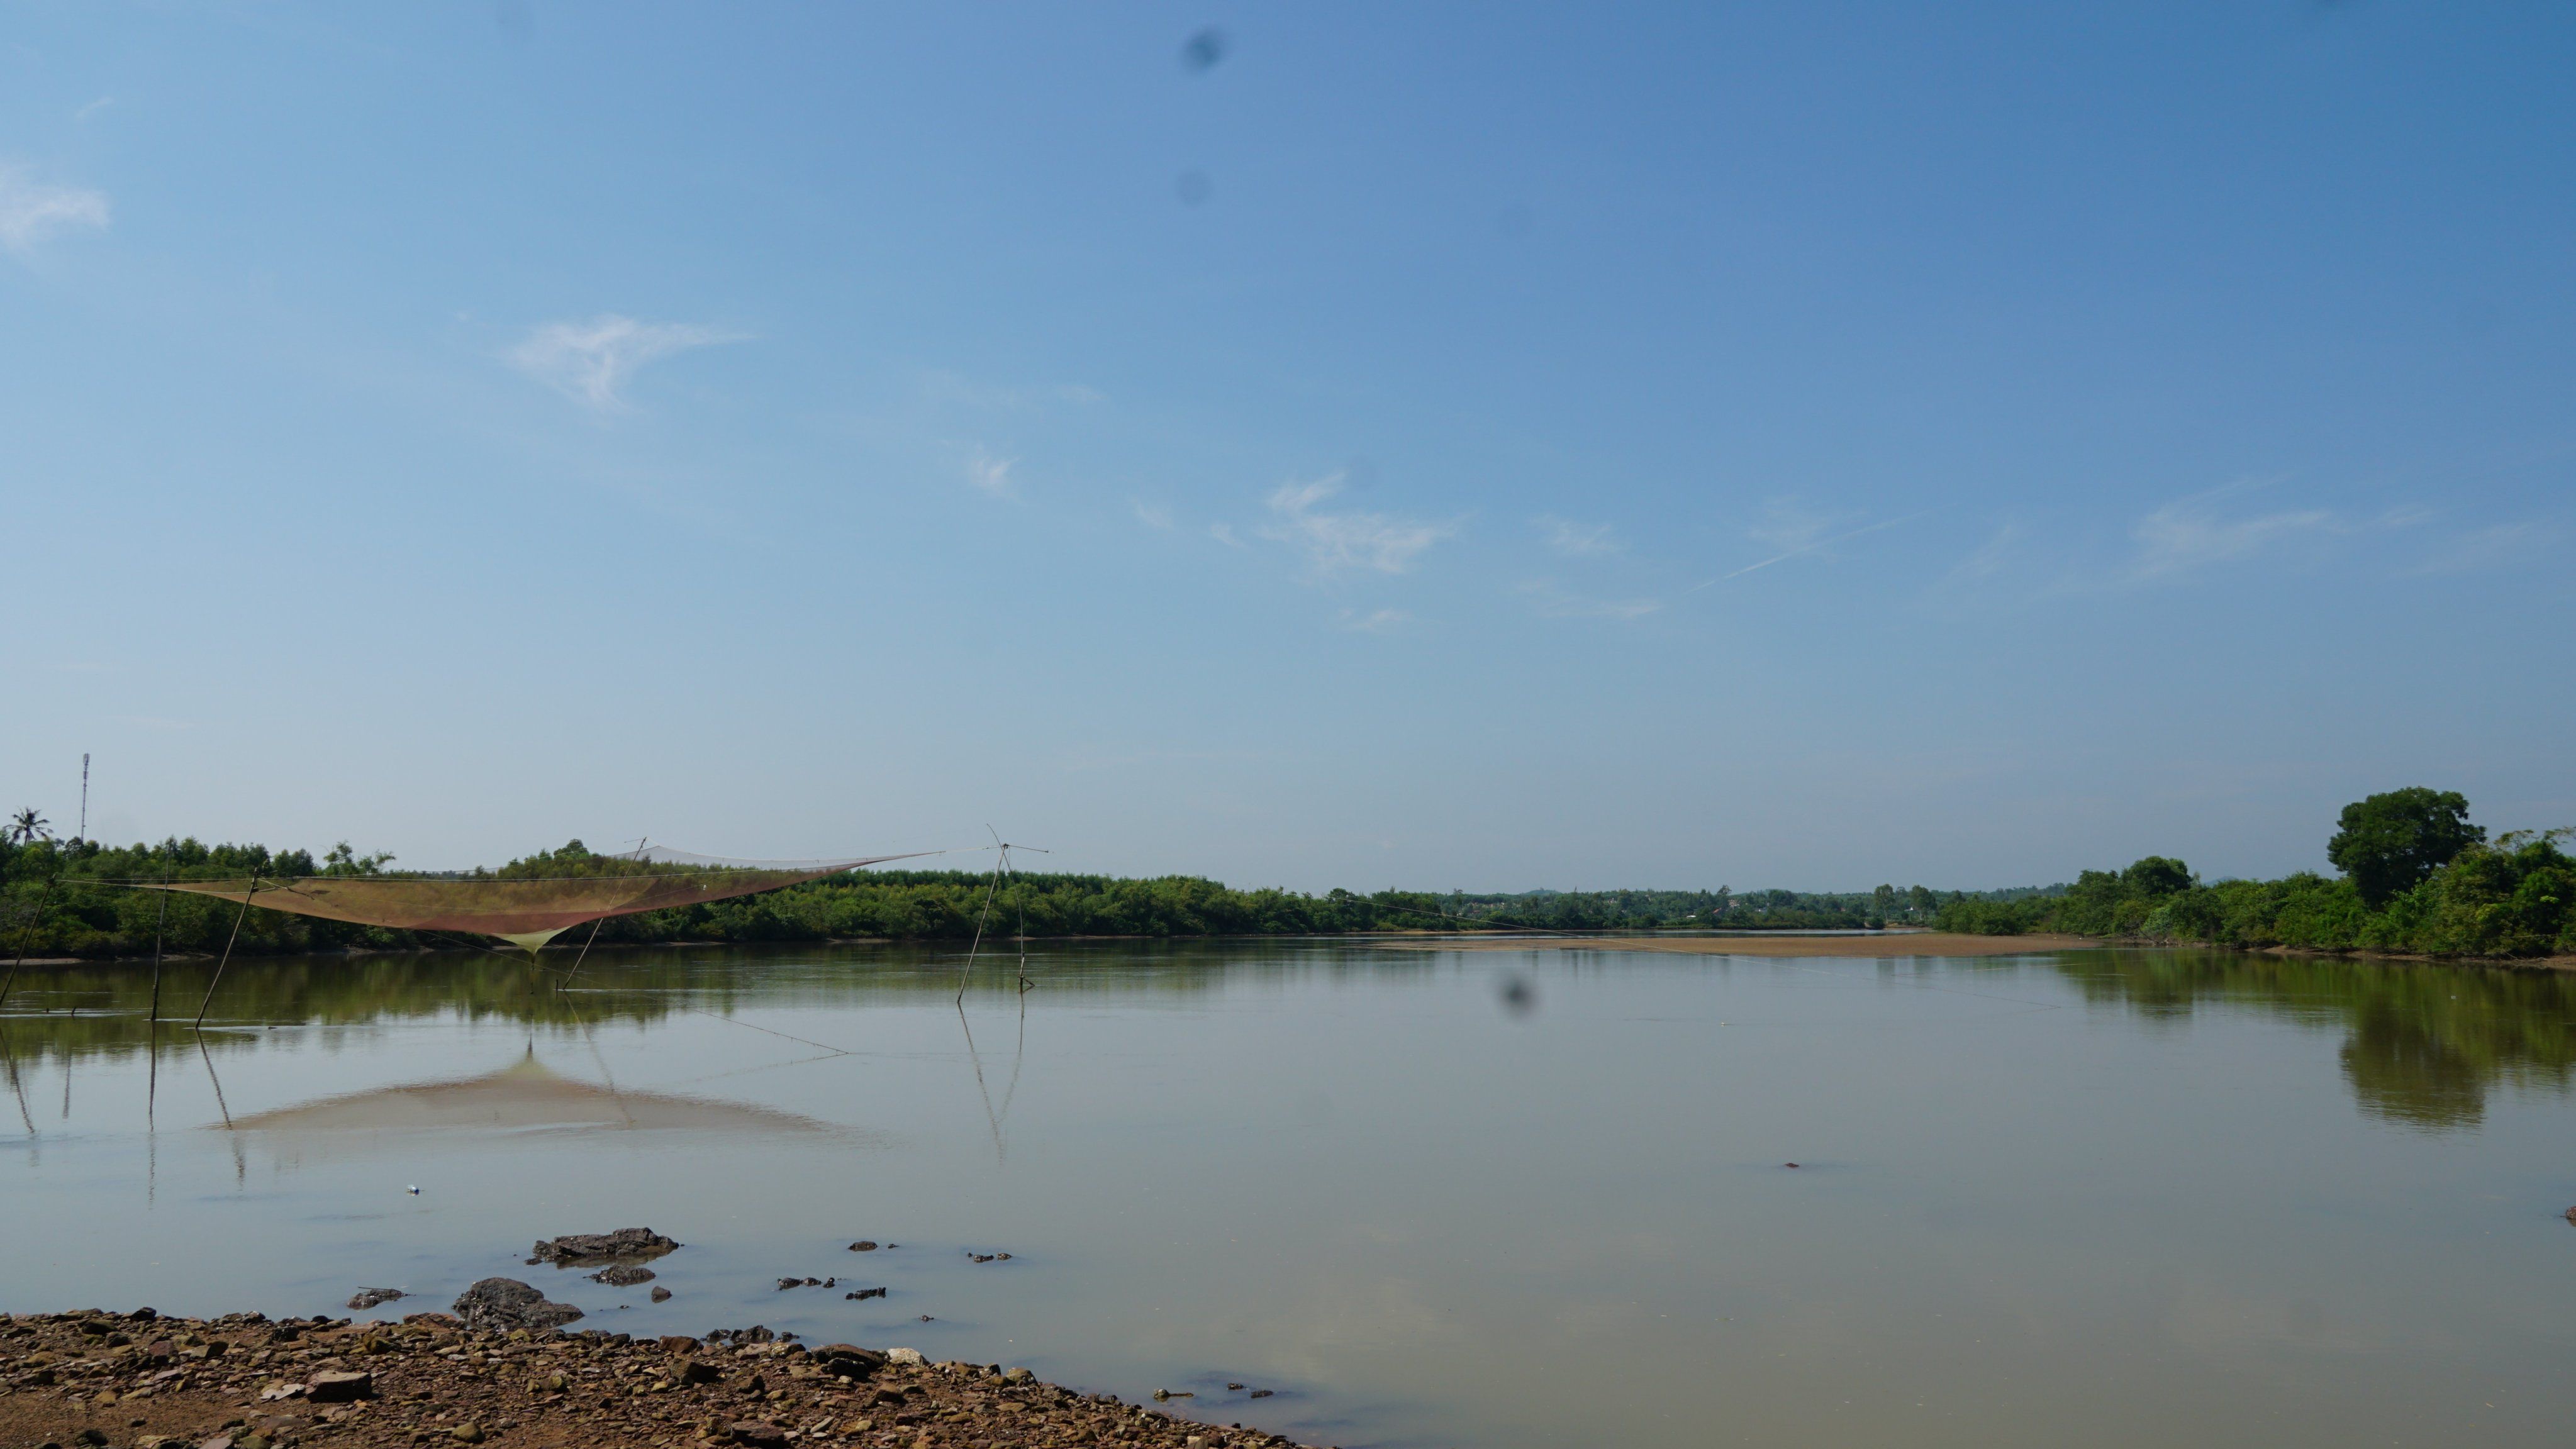 Đoạn sông Loan, nơi ông Phạm Văn Thiện thả lưới đánh bắt cá gặp nạn.